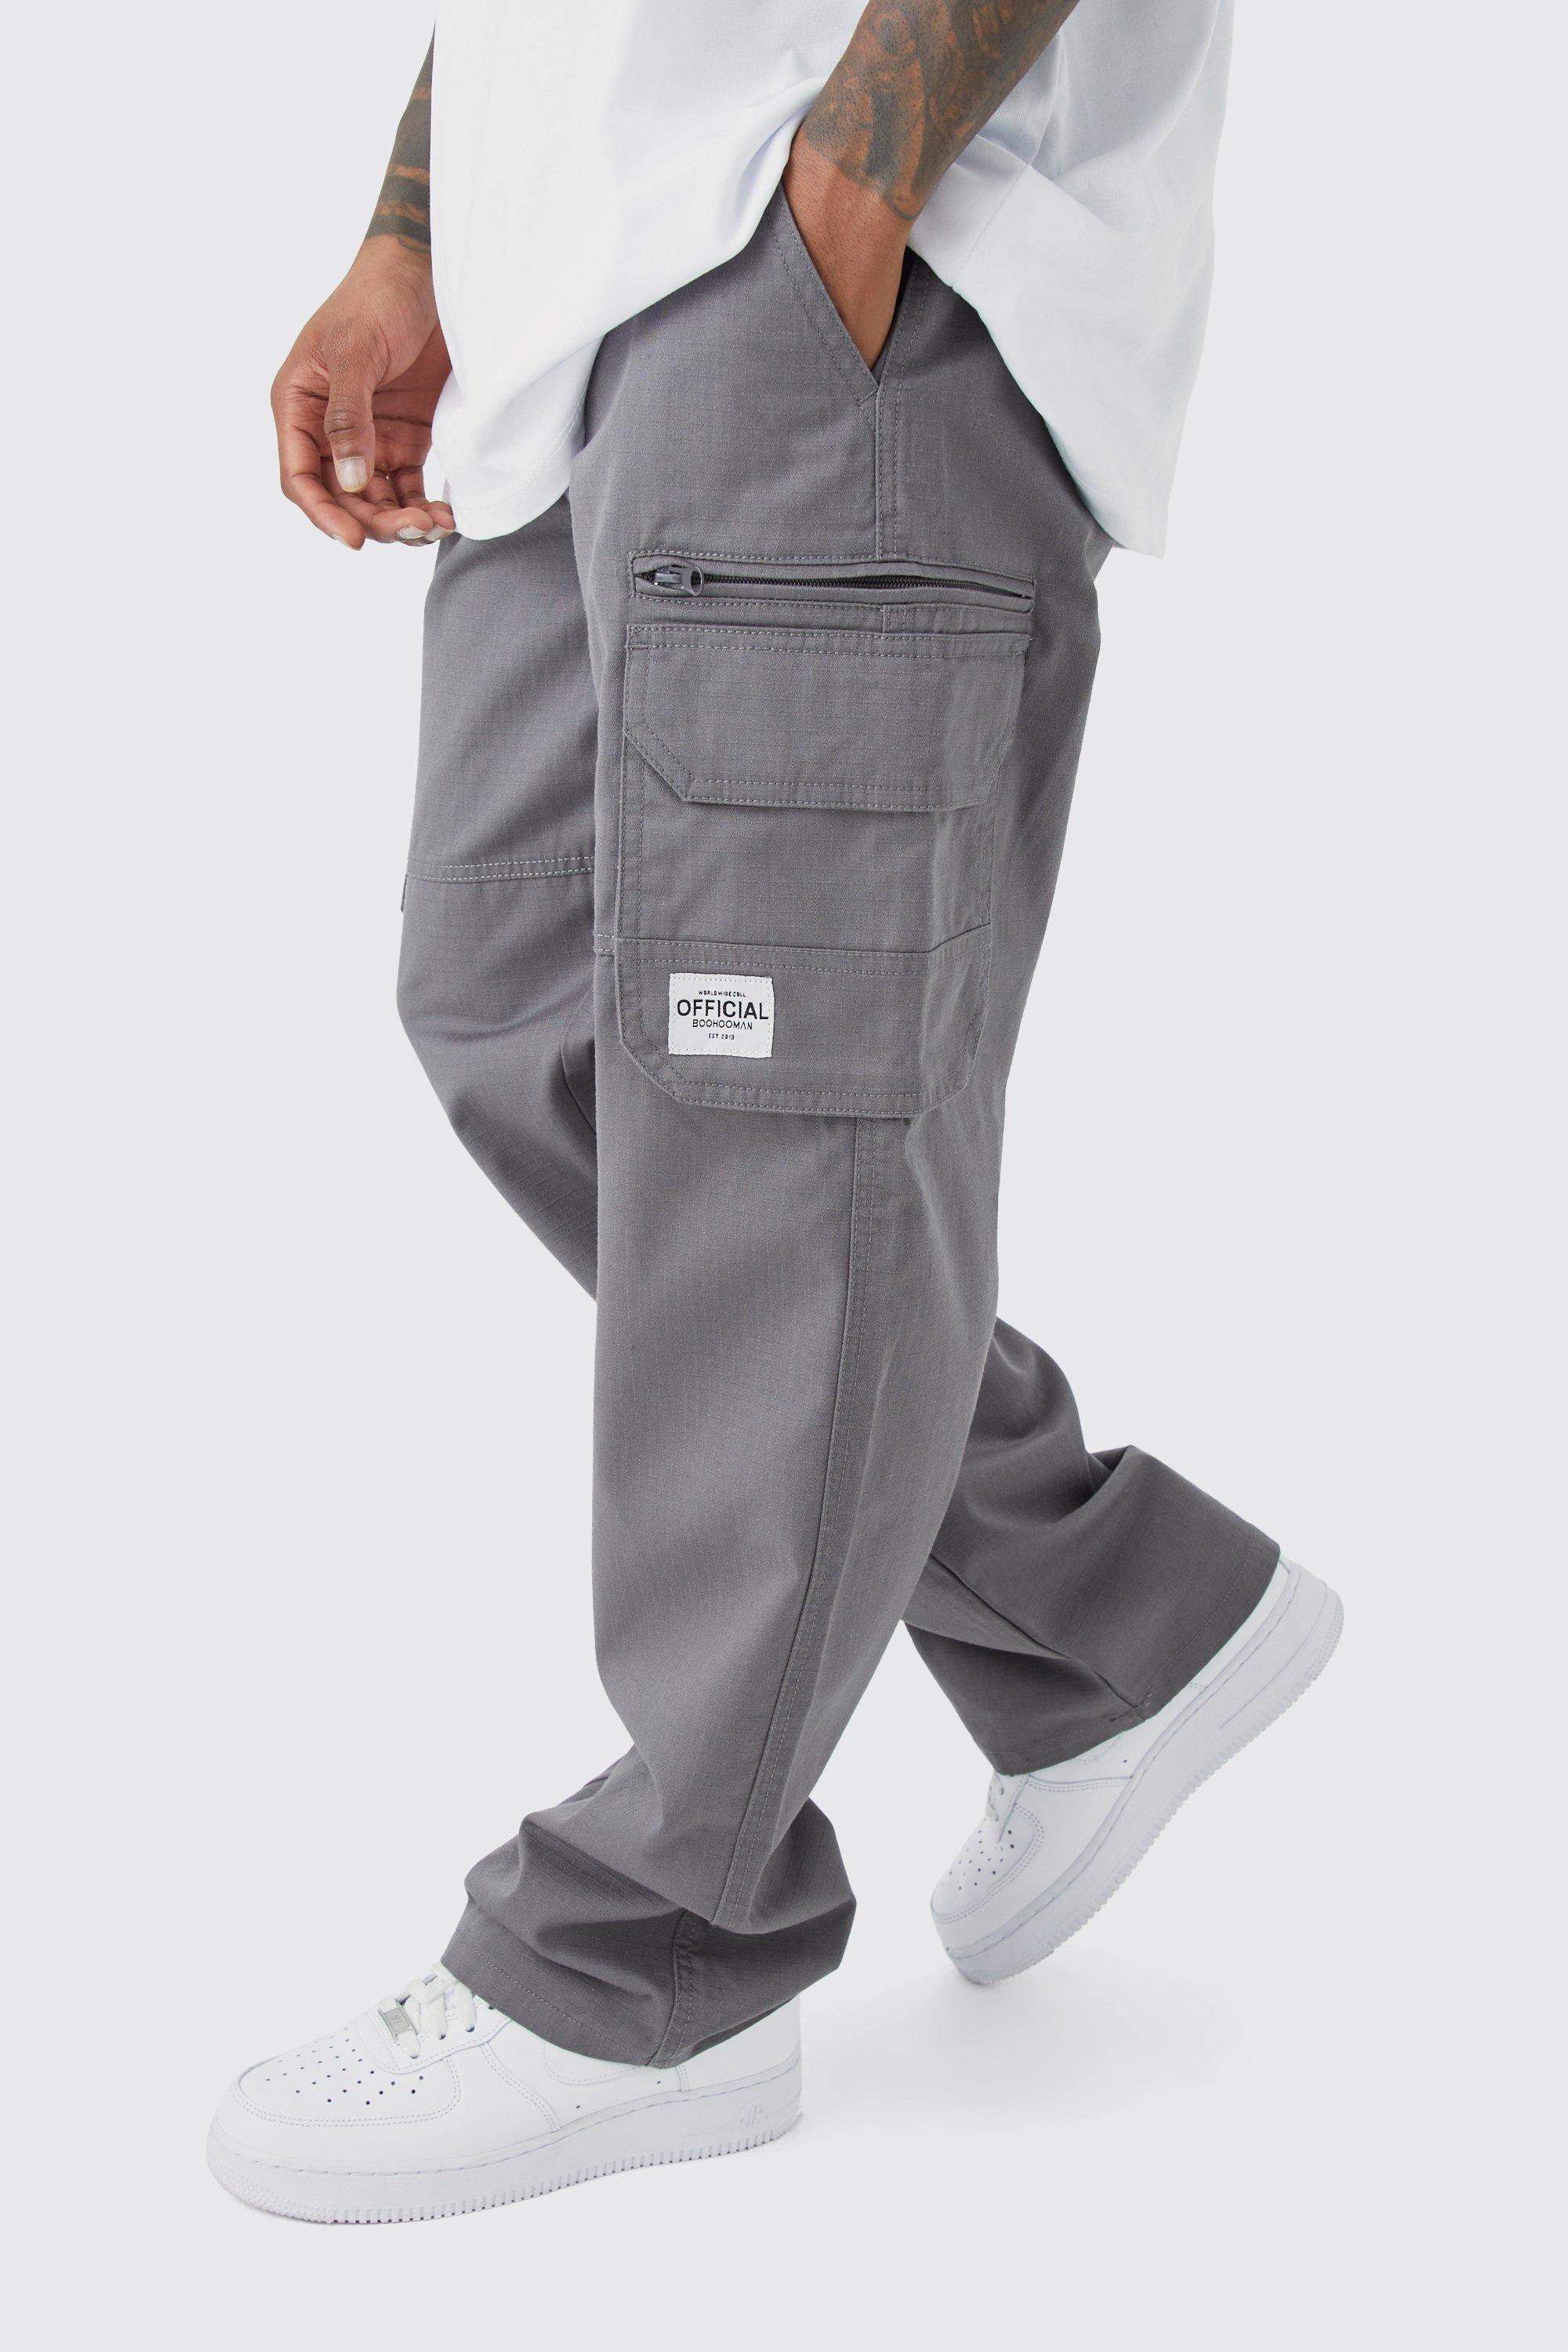 Image of Pantaloni Cargo fissi in nylon ripstop con zip ed etichetta in tessuto, Grigio